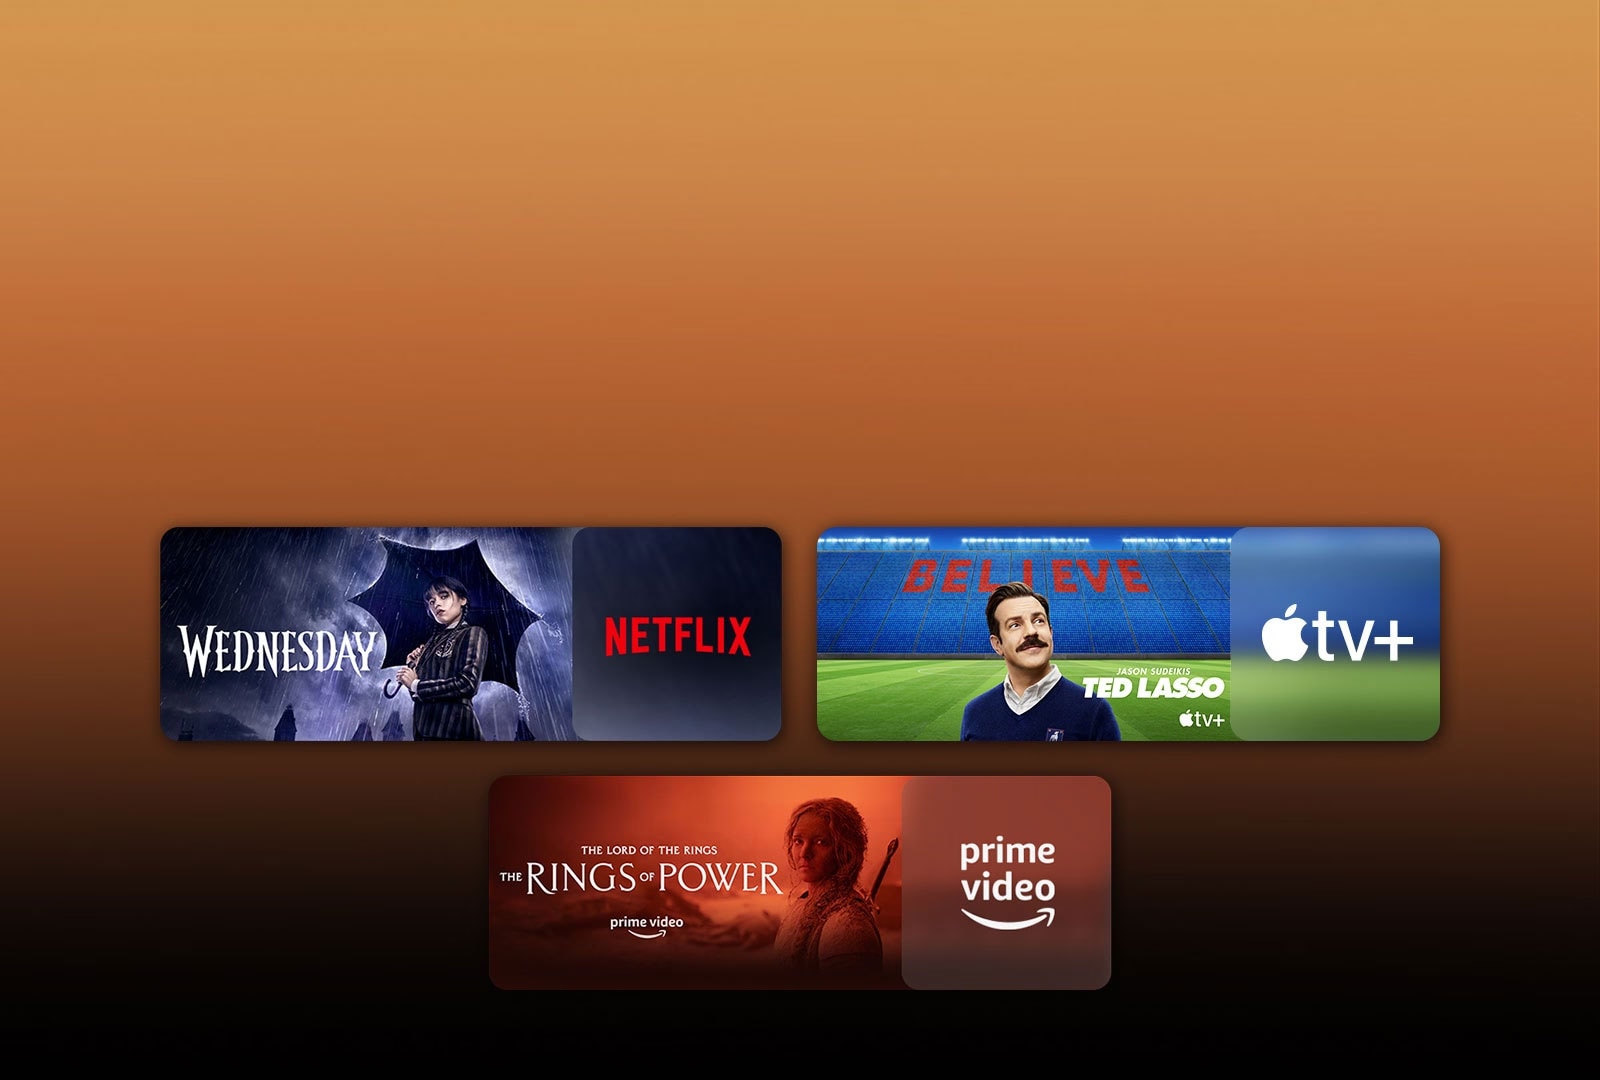 لوگوهای پلتفرم‌های سرویس پخش آنلاین و تصاویر فیلم‌های مربوط به آنها درست در کنار هر لوگو درج شده‌اند. تصاویری از چهارشنبه از Netflix، تد لاسو از Apple TV و حلقه‌های قدرت از PRIME VIDEO قابل مشاهده است.